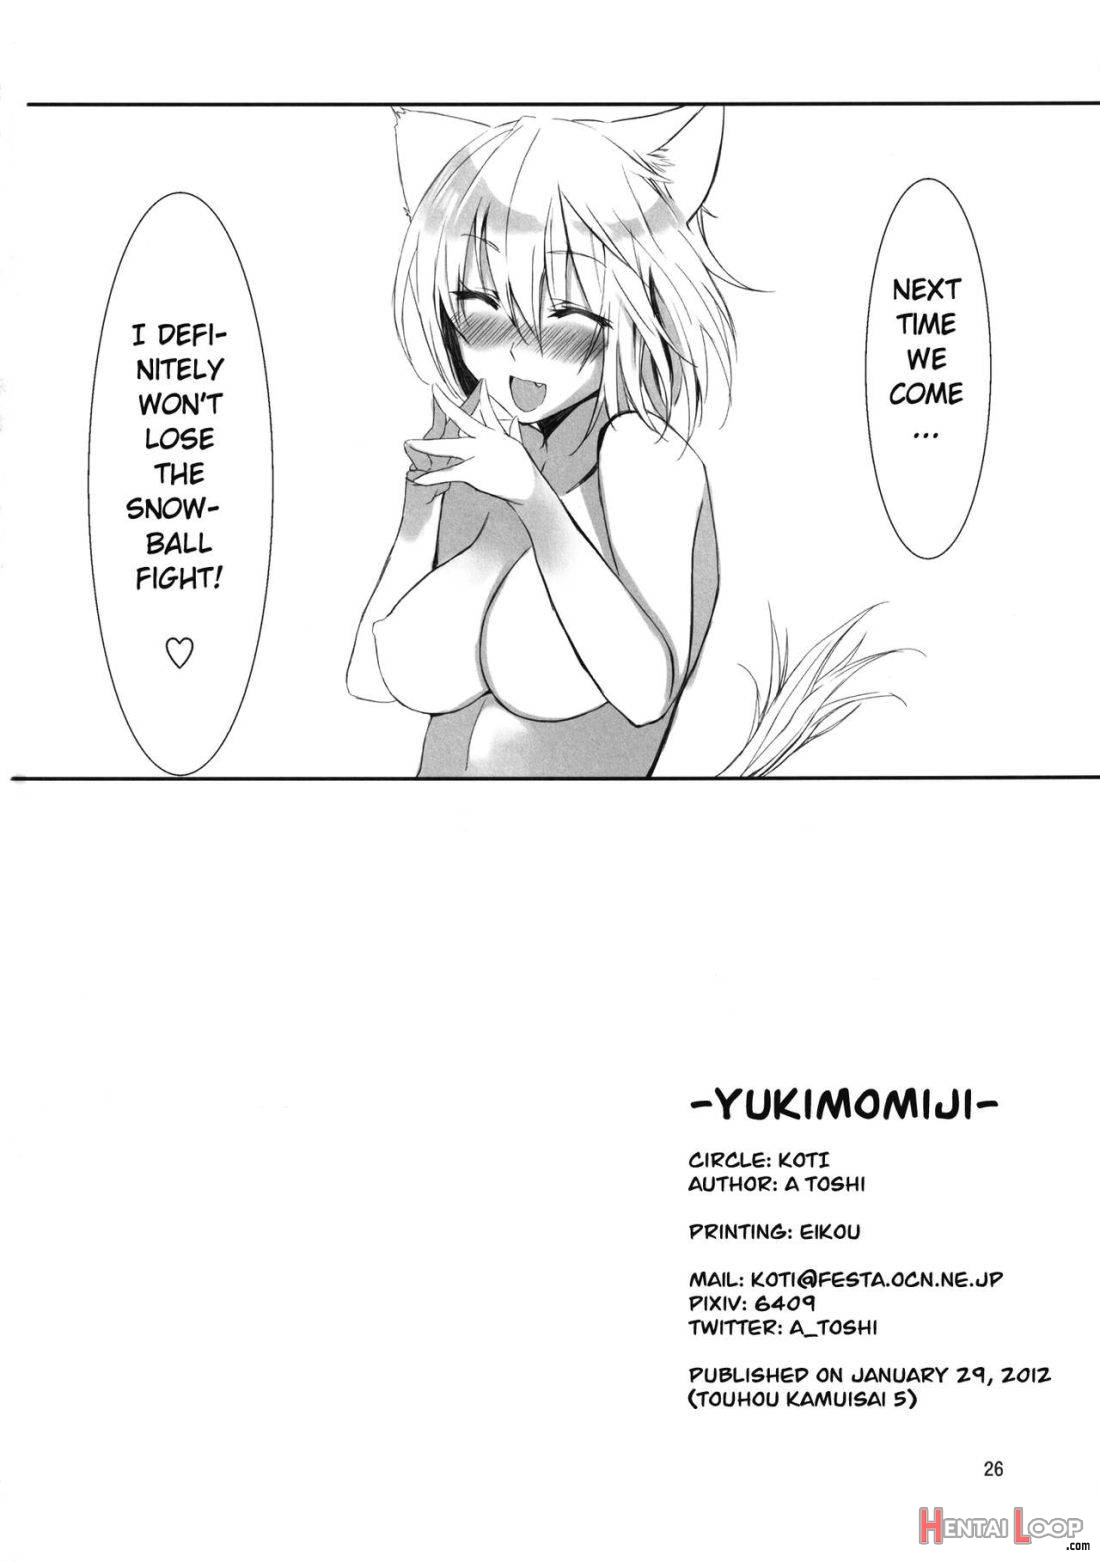 Yukimomiji page 24